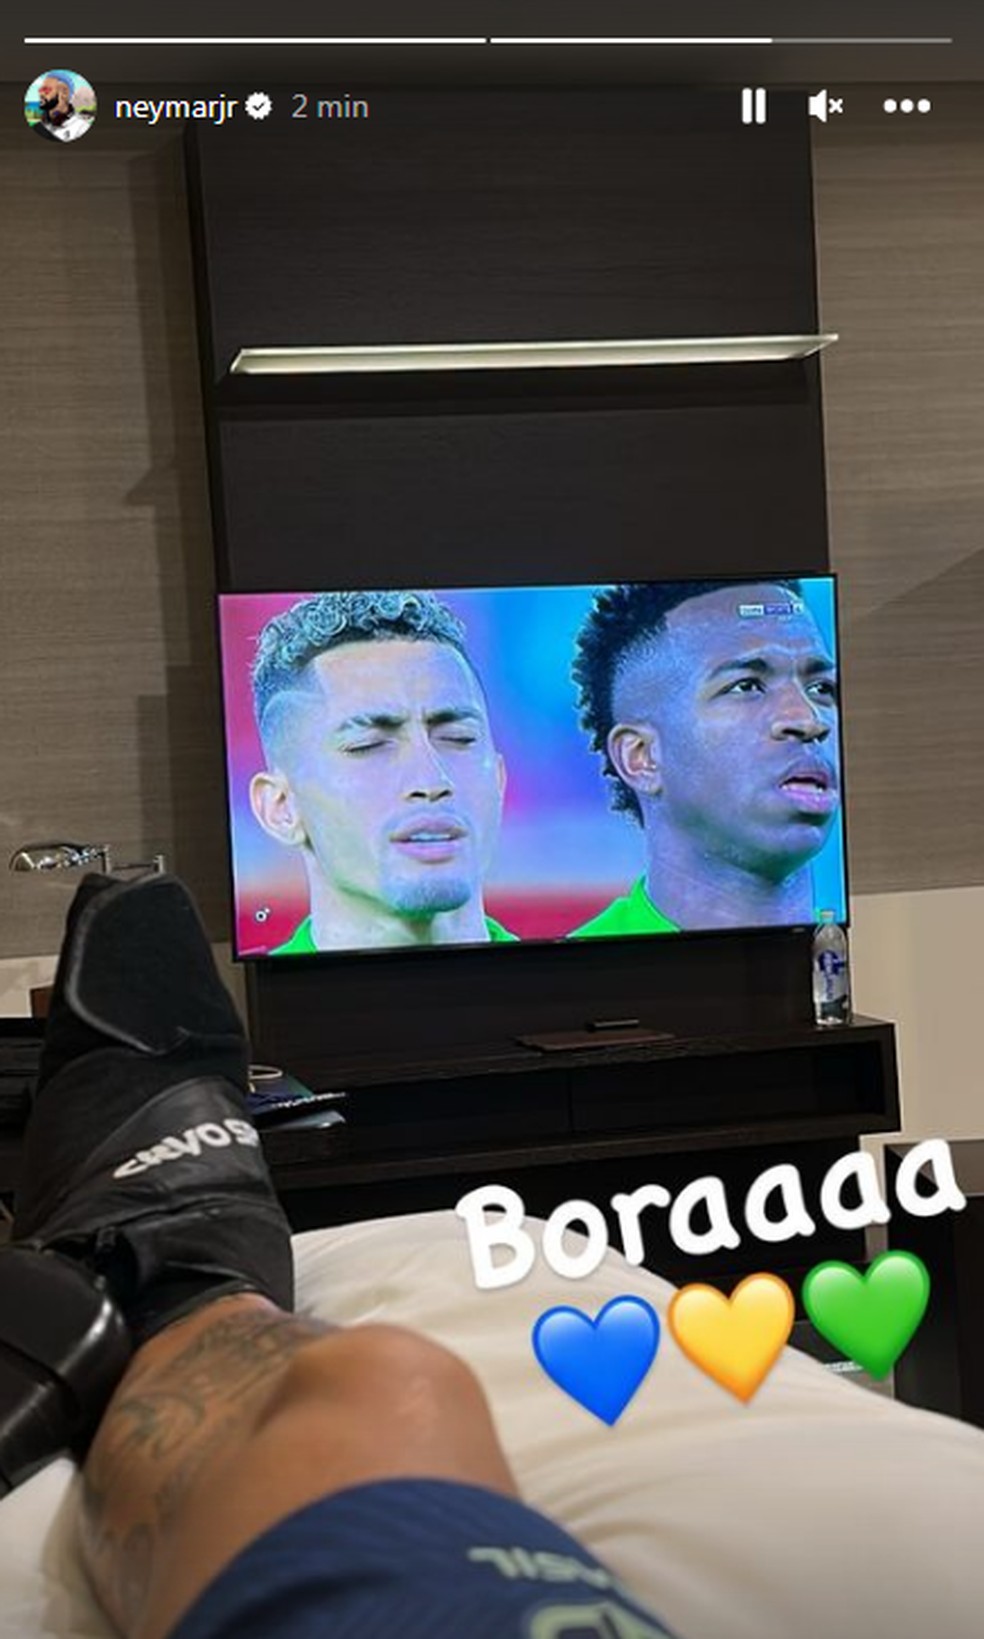 Em tratamento, Neymar postou mensagem de apoio aos jogadores da seleção brasileira antes de jogo contra a Suíça — Foto: Reprodução